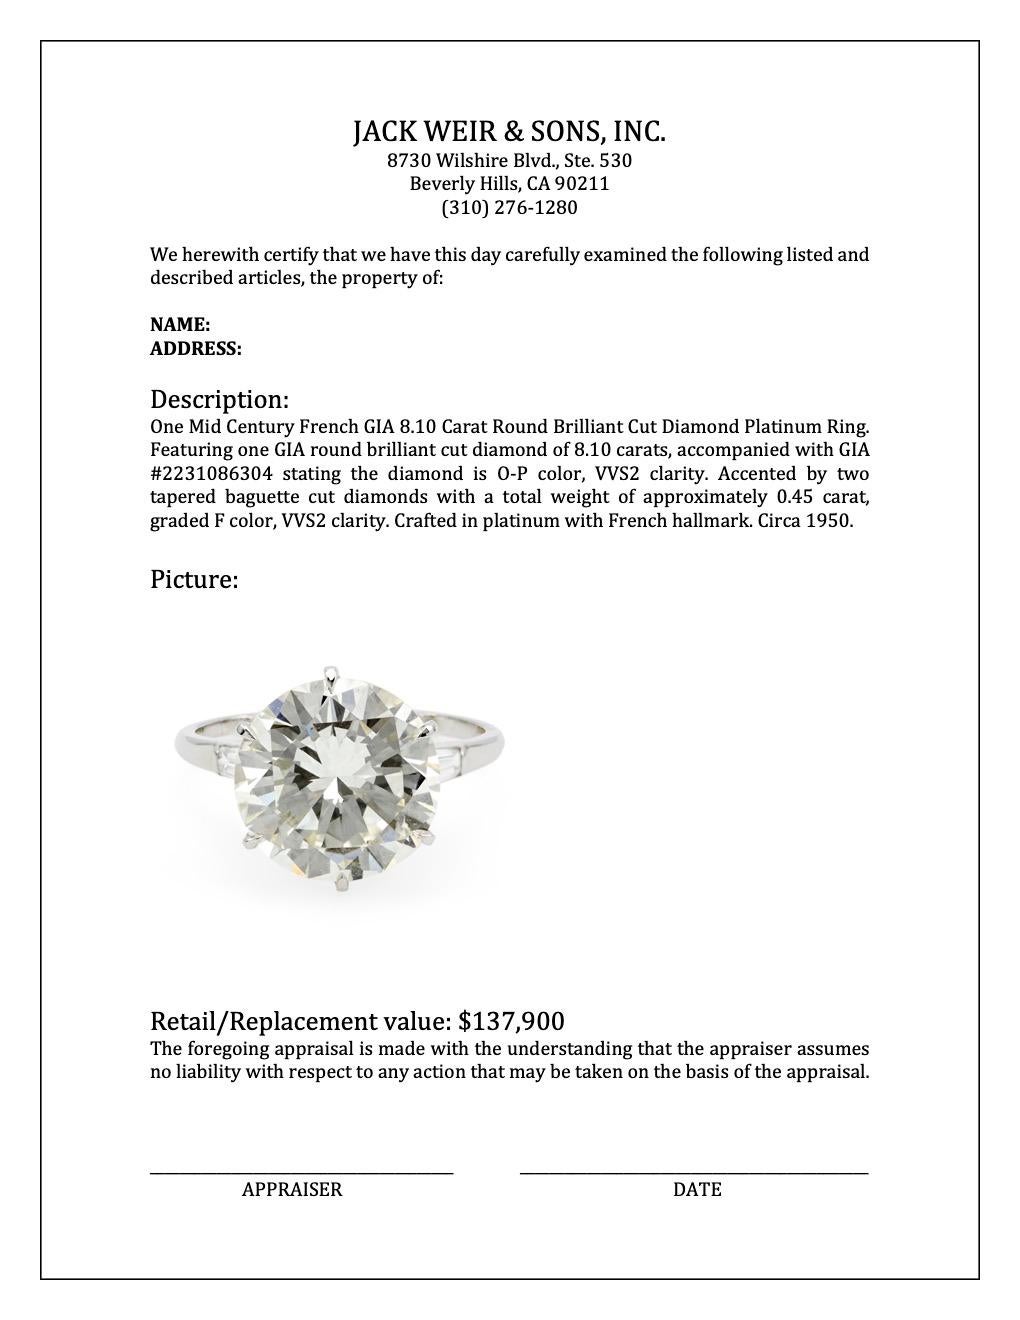 Mid Century French GIA 8.10 Carat Round Brilliant Cut Diamond Platinum Ring 4